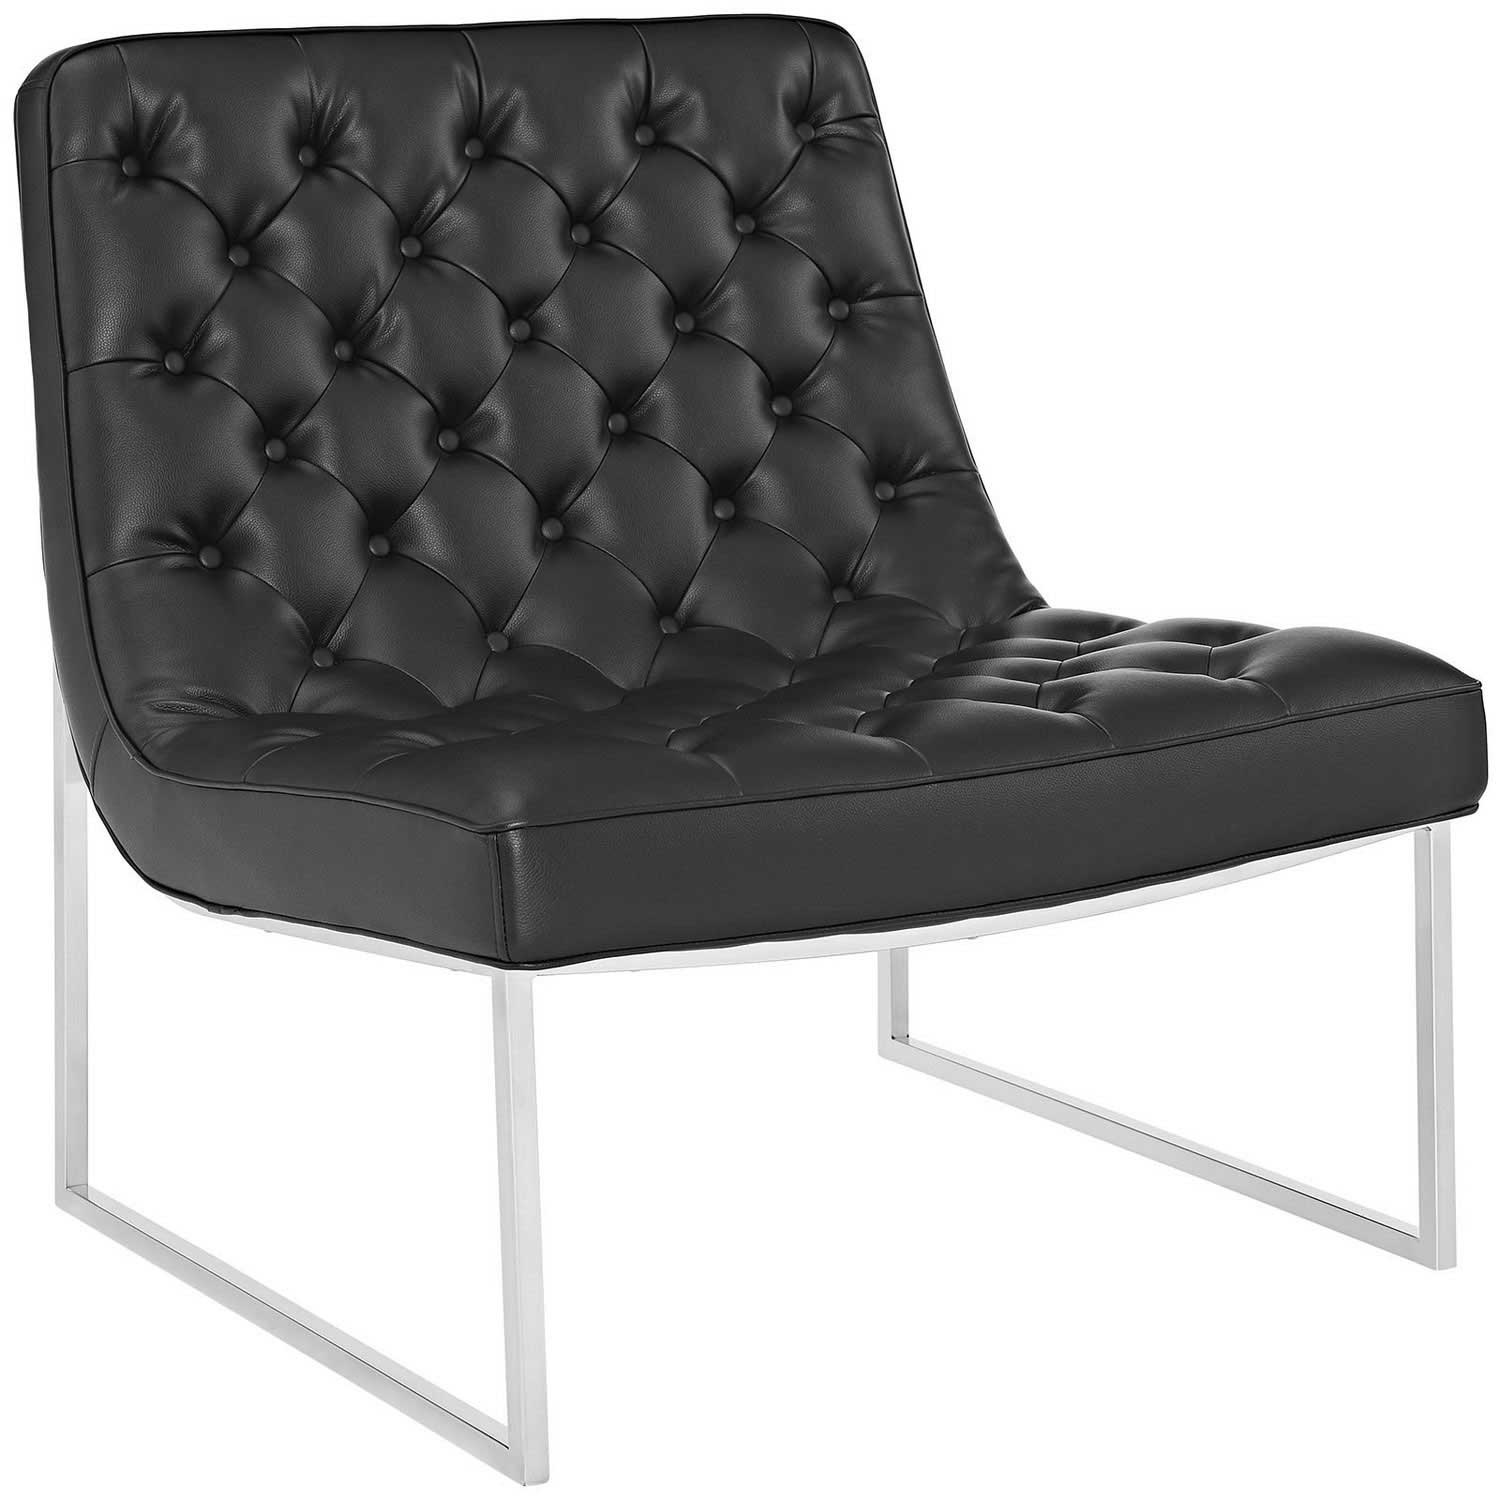 Modway Ibiza Memory Foam Lounge Chair - Black